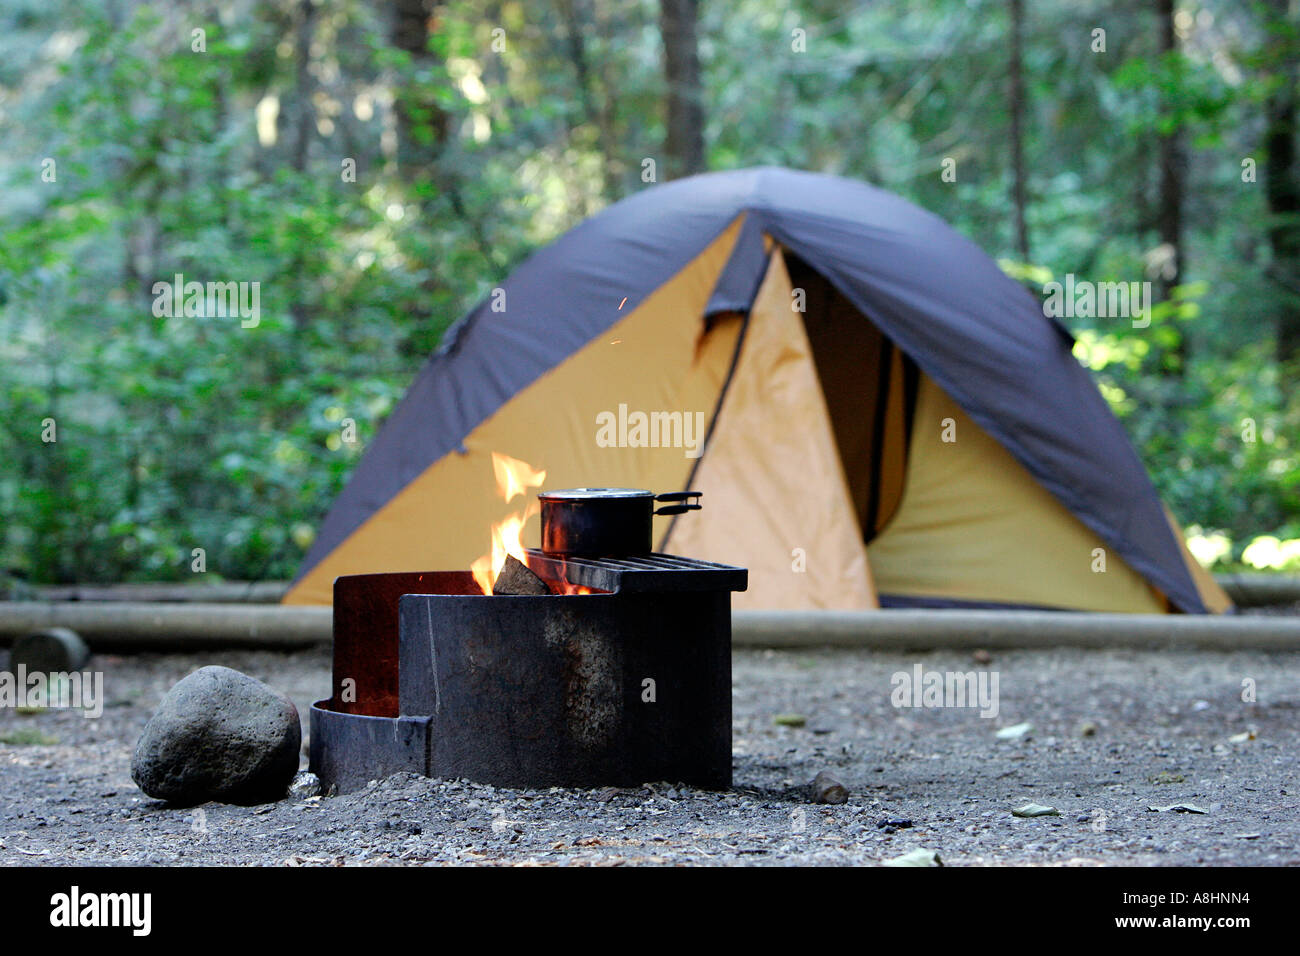 Topf am Lagerfeuer neben ein Iglu Zelt auf einem Campingplatz in British Columbia, Kanada Stockfoto